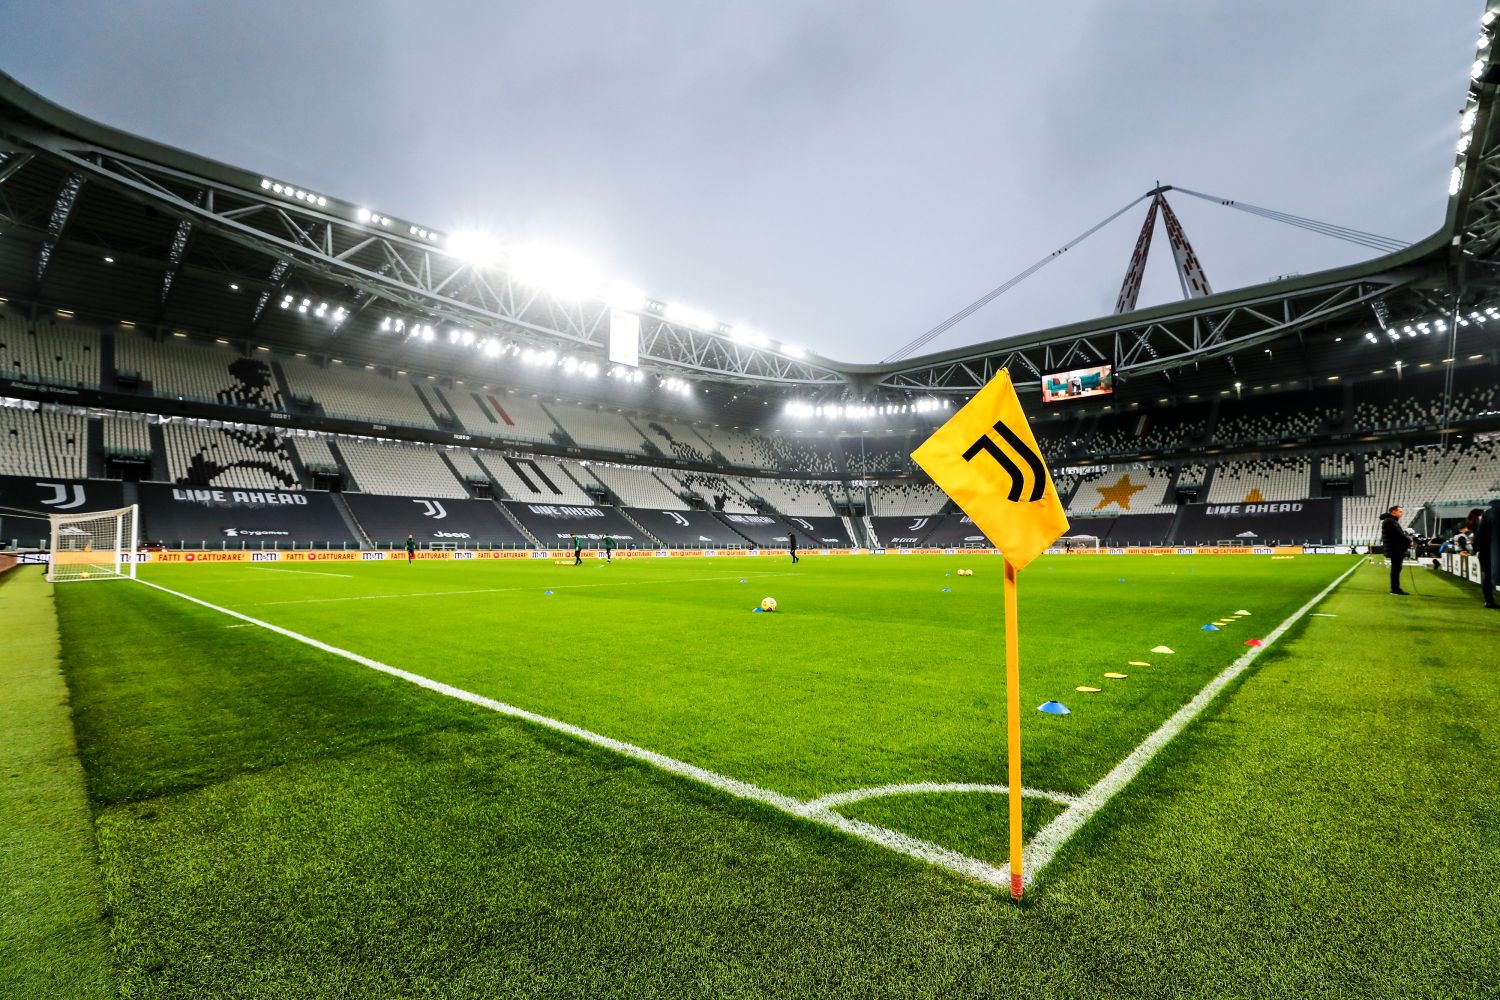 OFICJALNIE: Juventus rozpoczął rewolucję. Pożegnalny list Andrei Agnellego